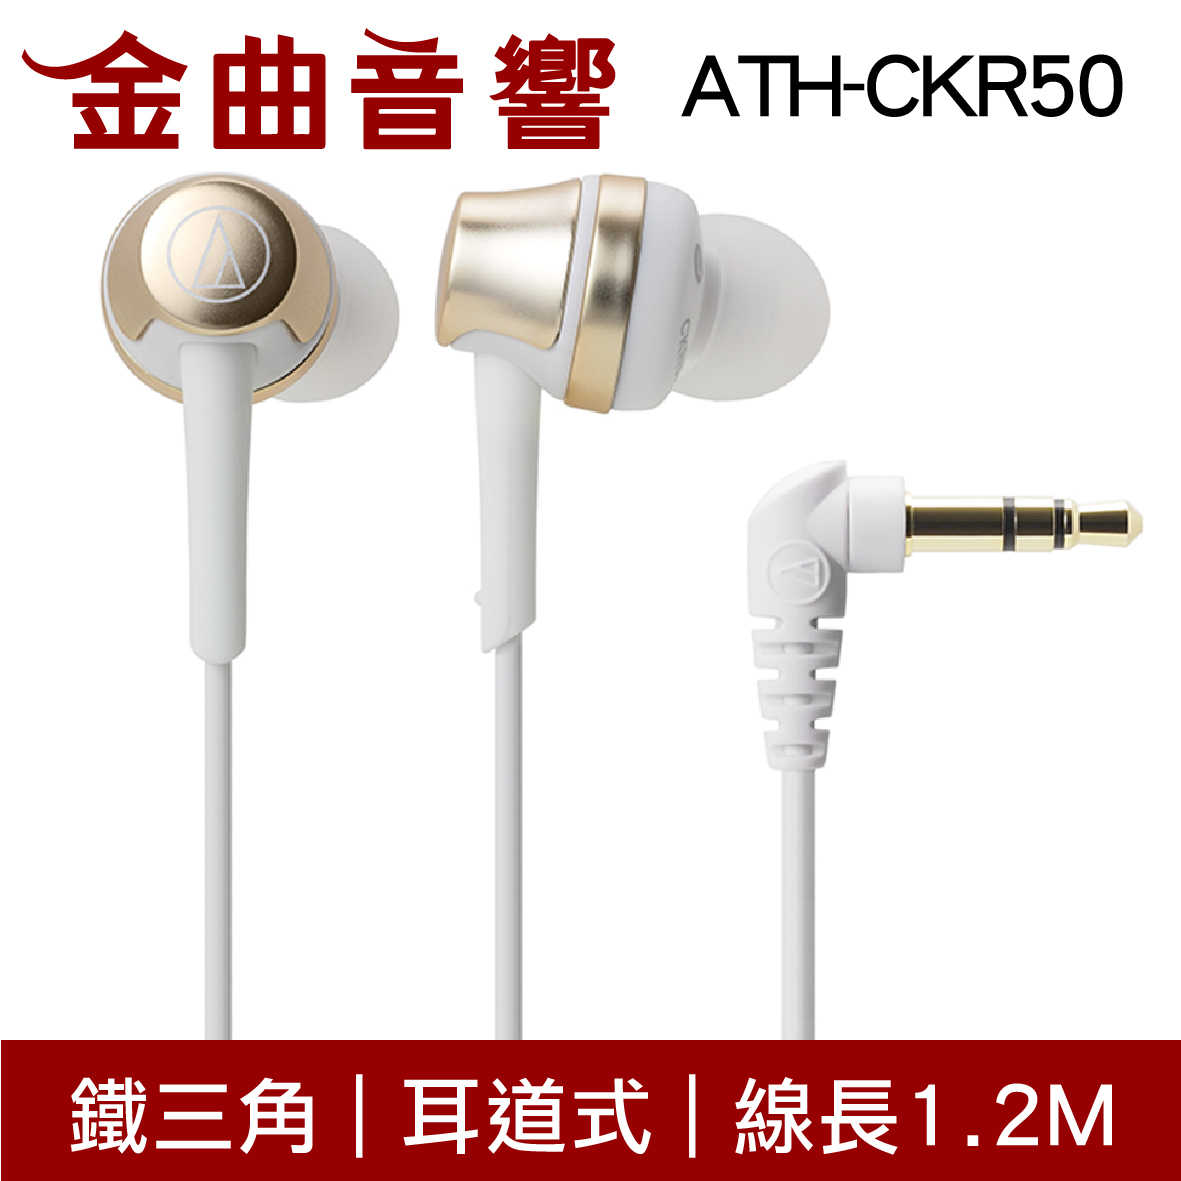 鐵三角 ATH-CKR50 粉色 耳道式耳機 | 金曲音響